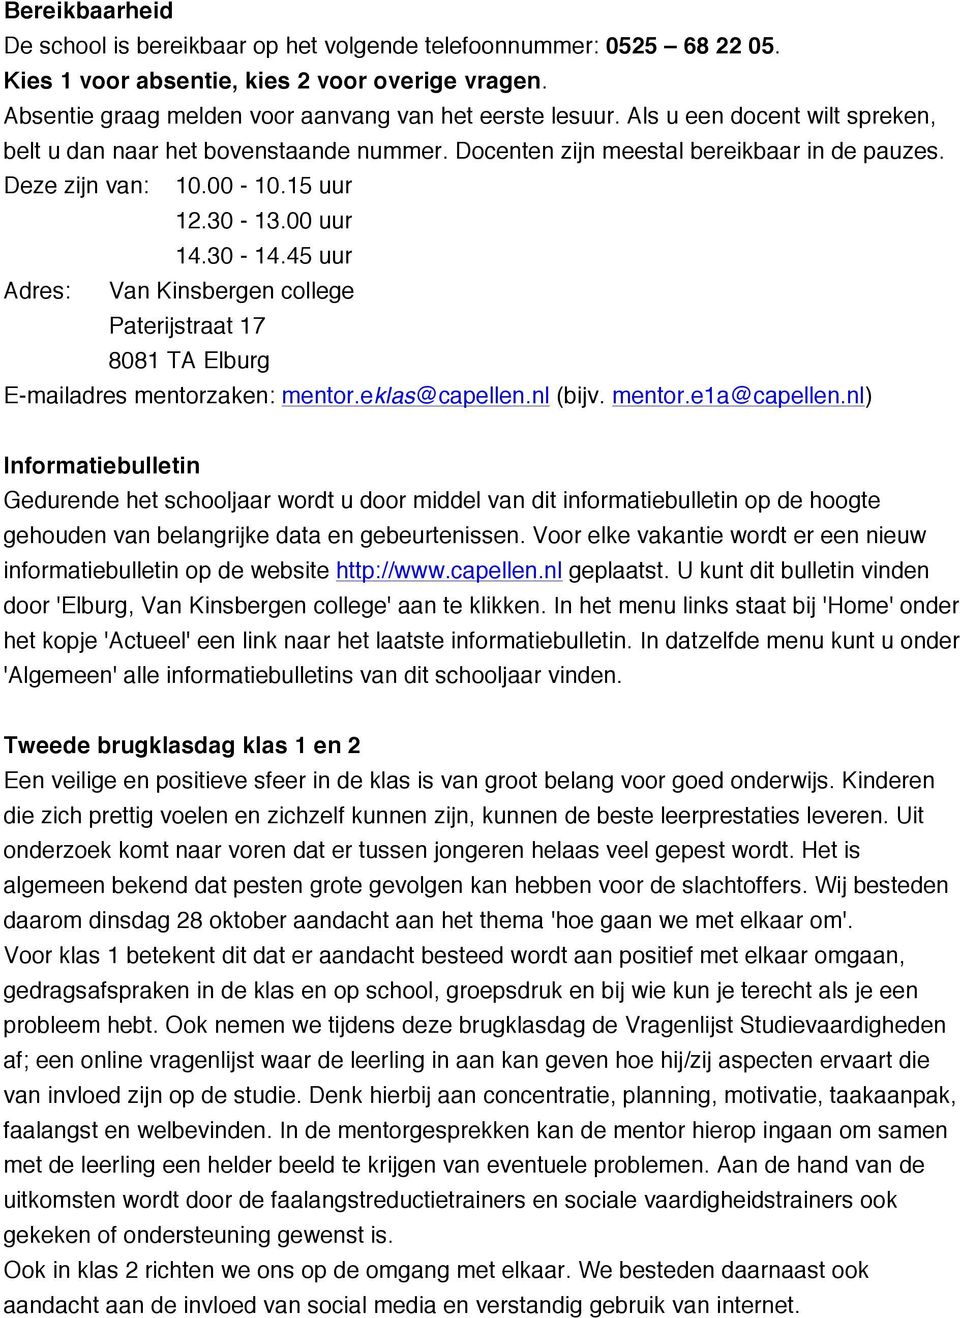 45 uur Adres: Van Kinsbergen college Paterijstraat 17 8081 TA Elburg E-mailadres mentorzaken: mentor.eklas@capellen.nl (bijv. mentor.e1a@capellen.